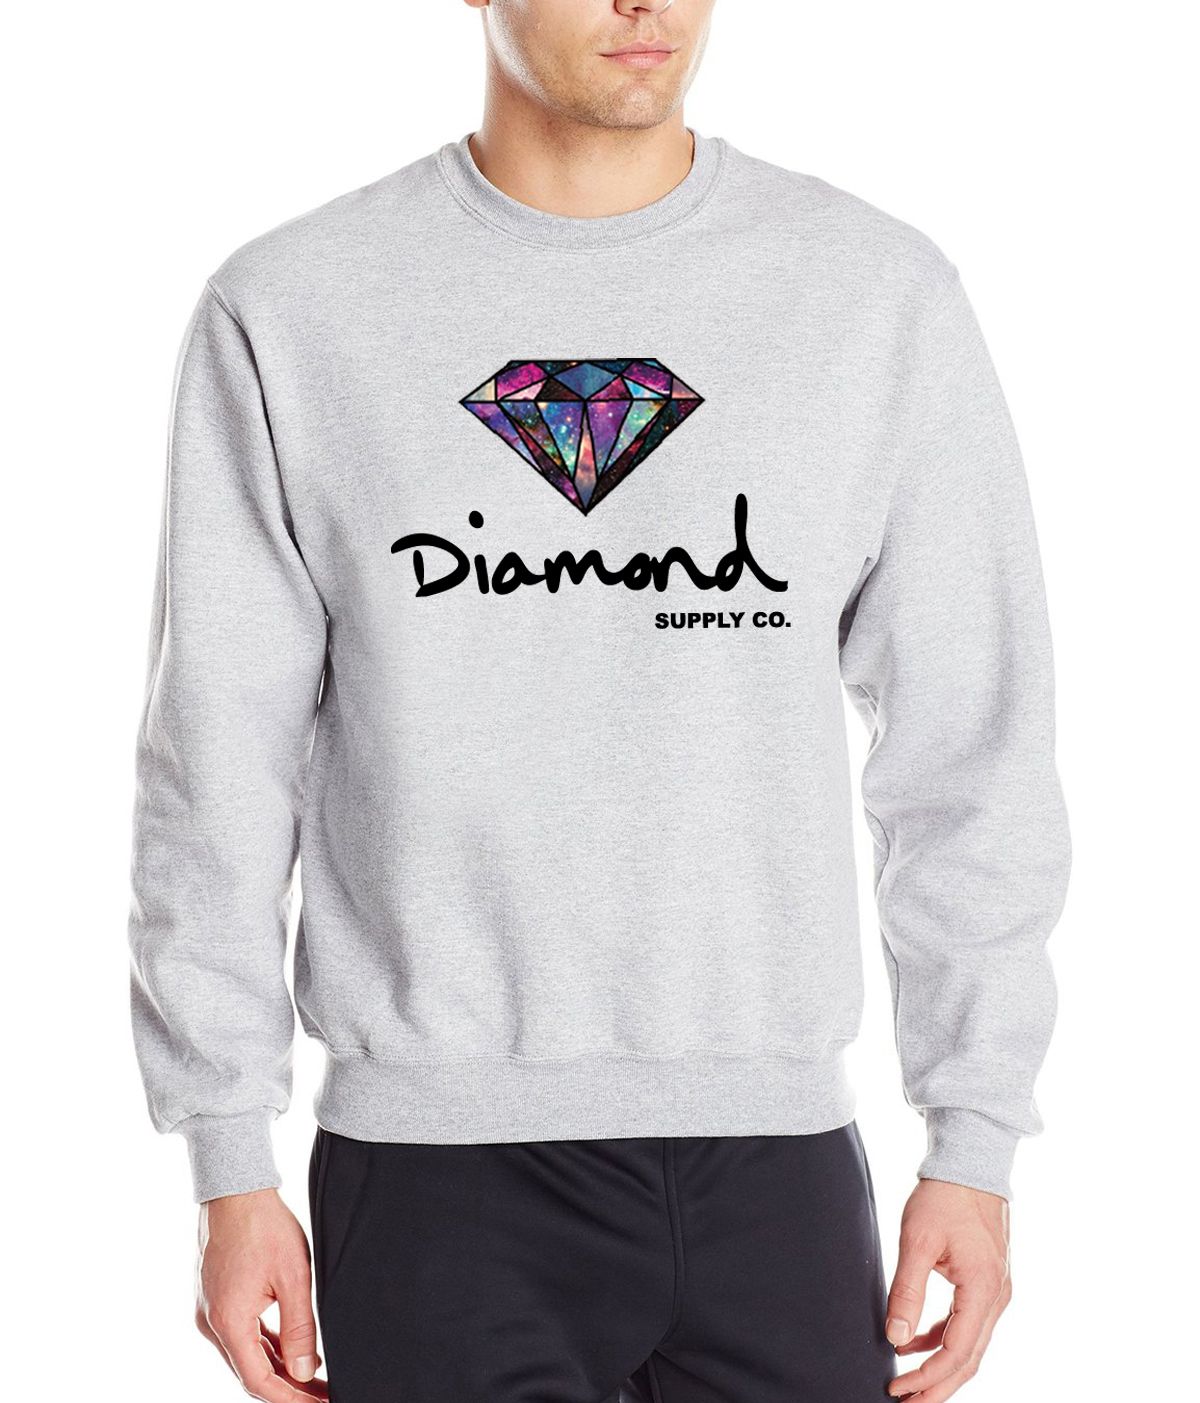 diamond supply co sweater